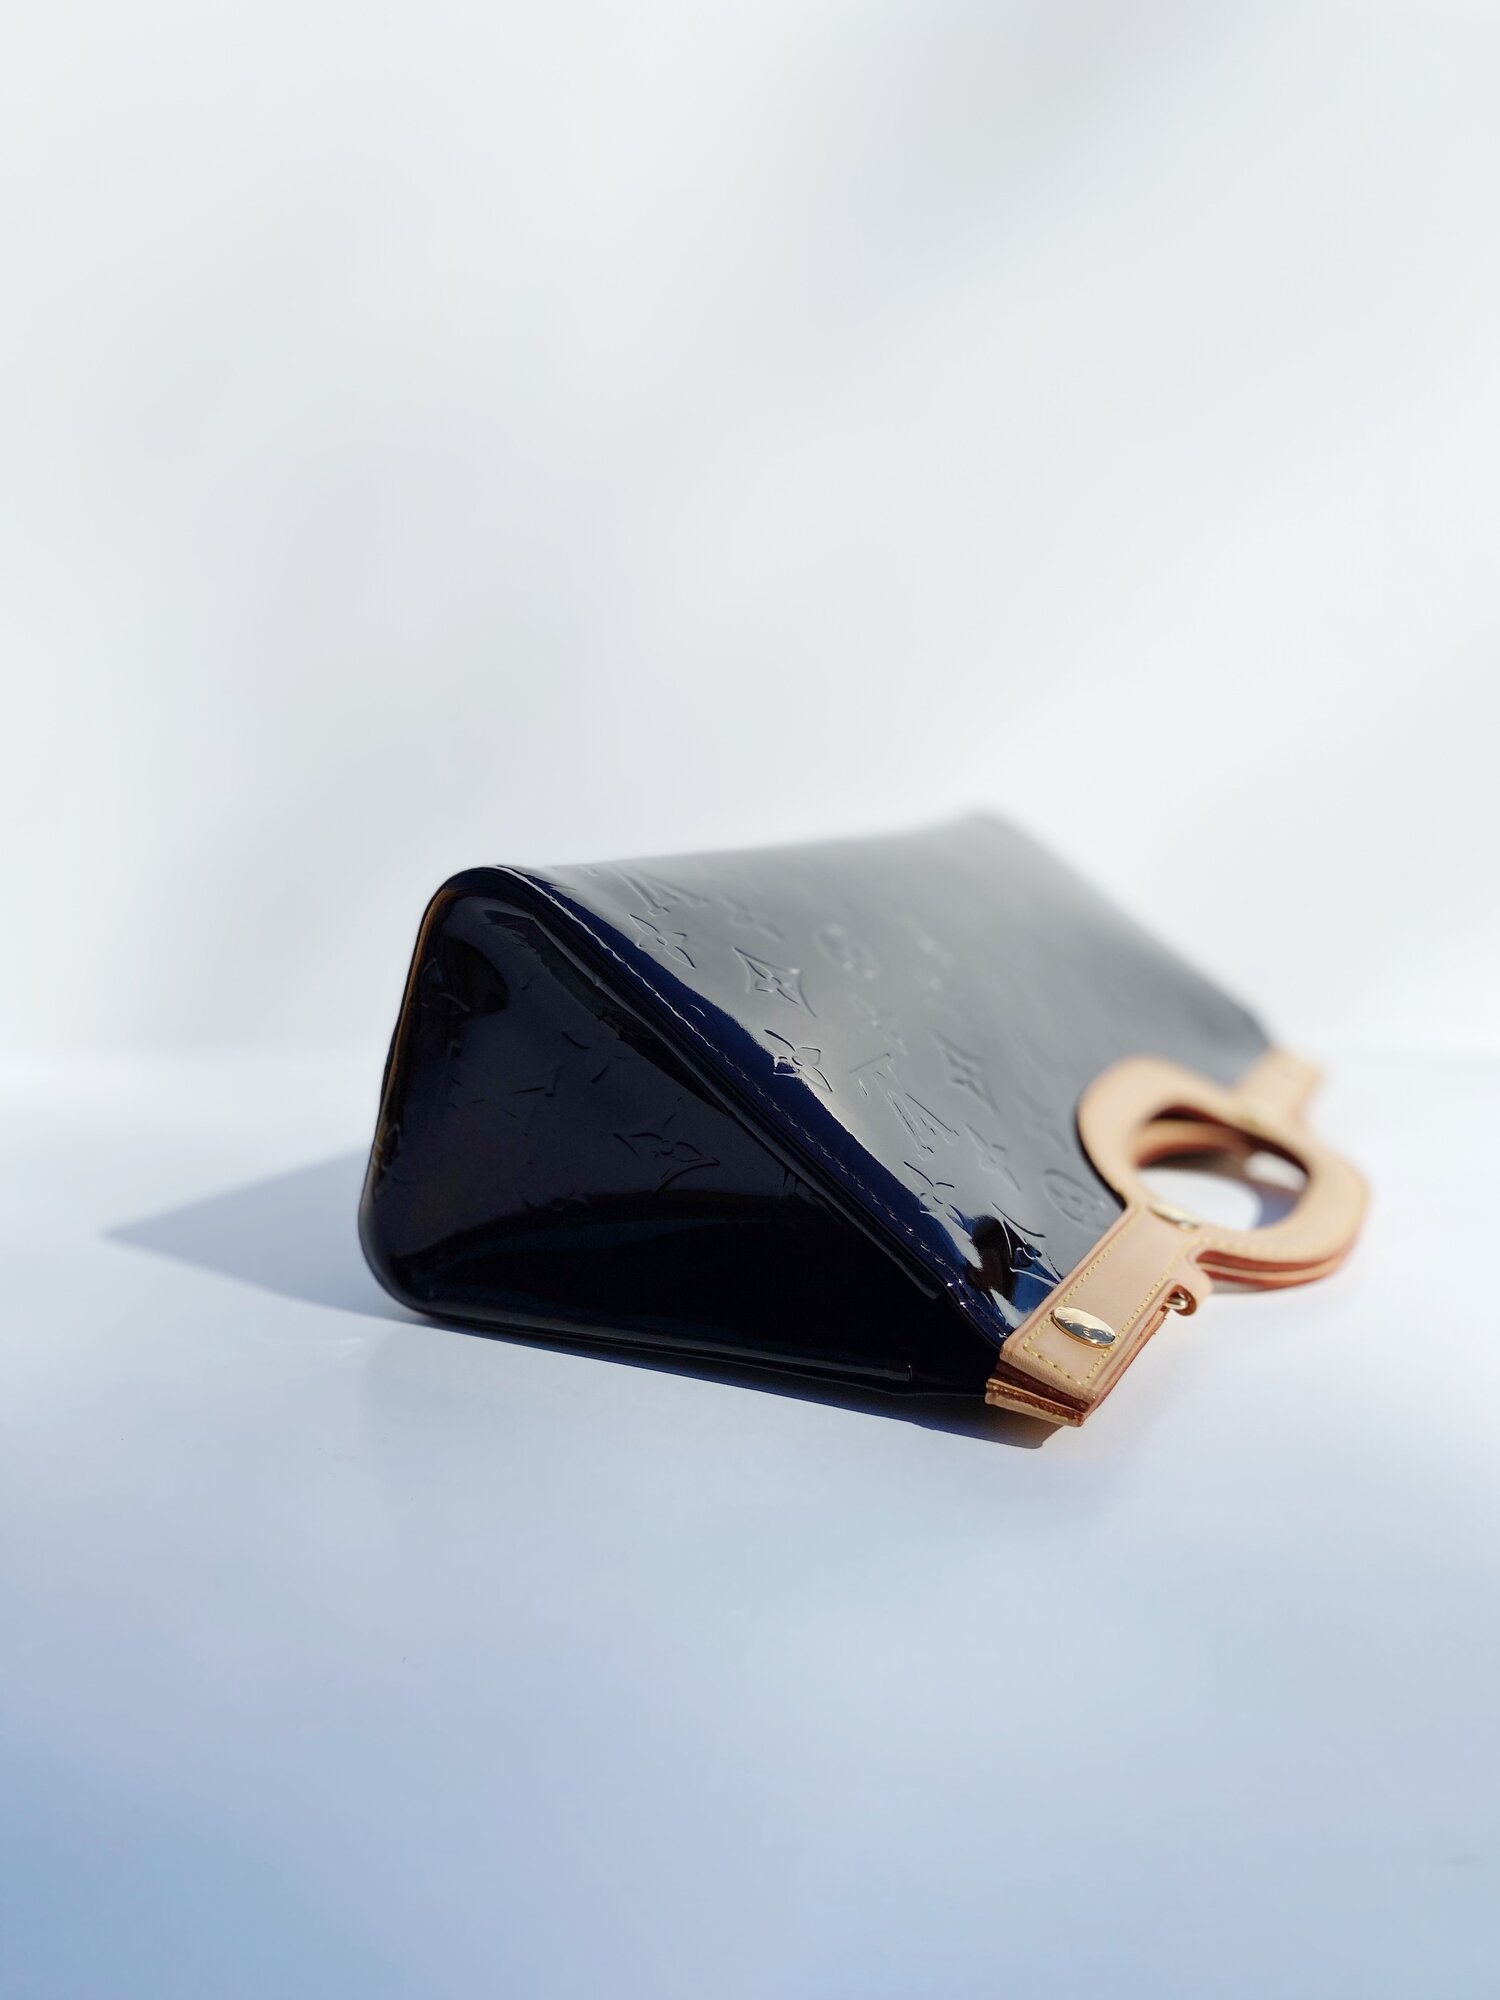 Louis Vuitton Roxbury Handbag 334338